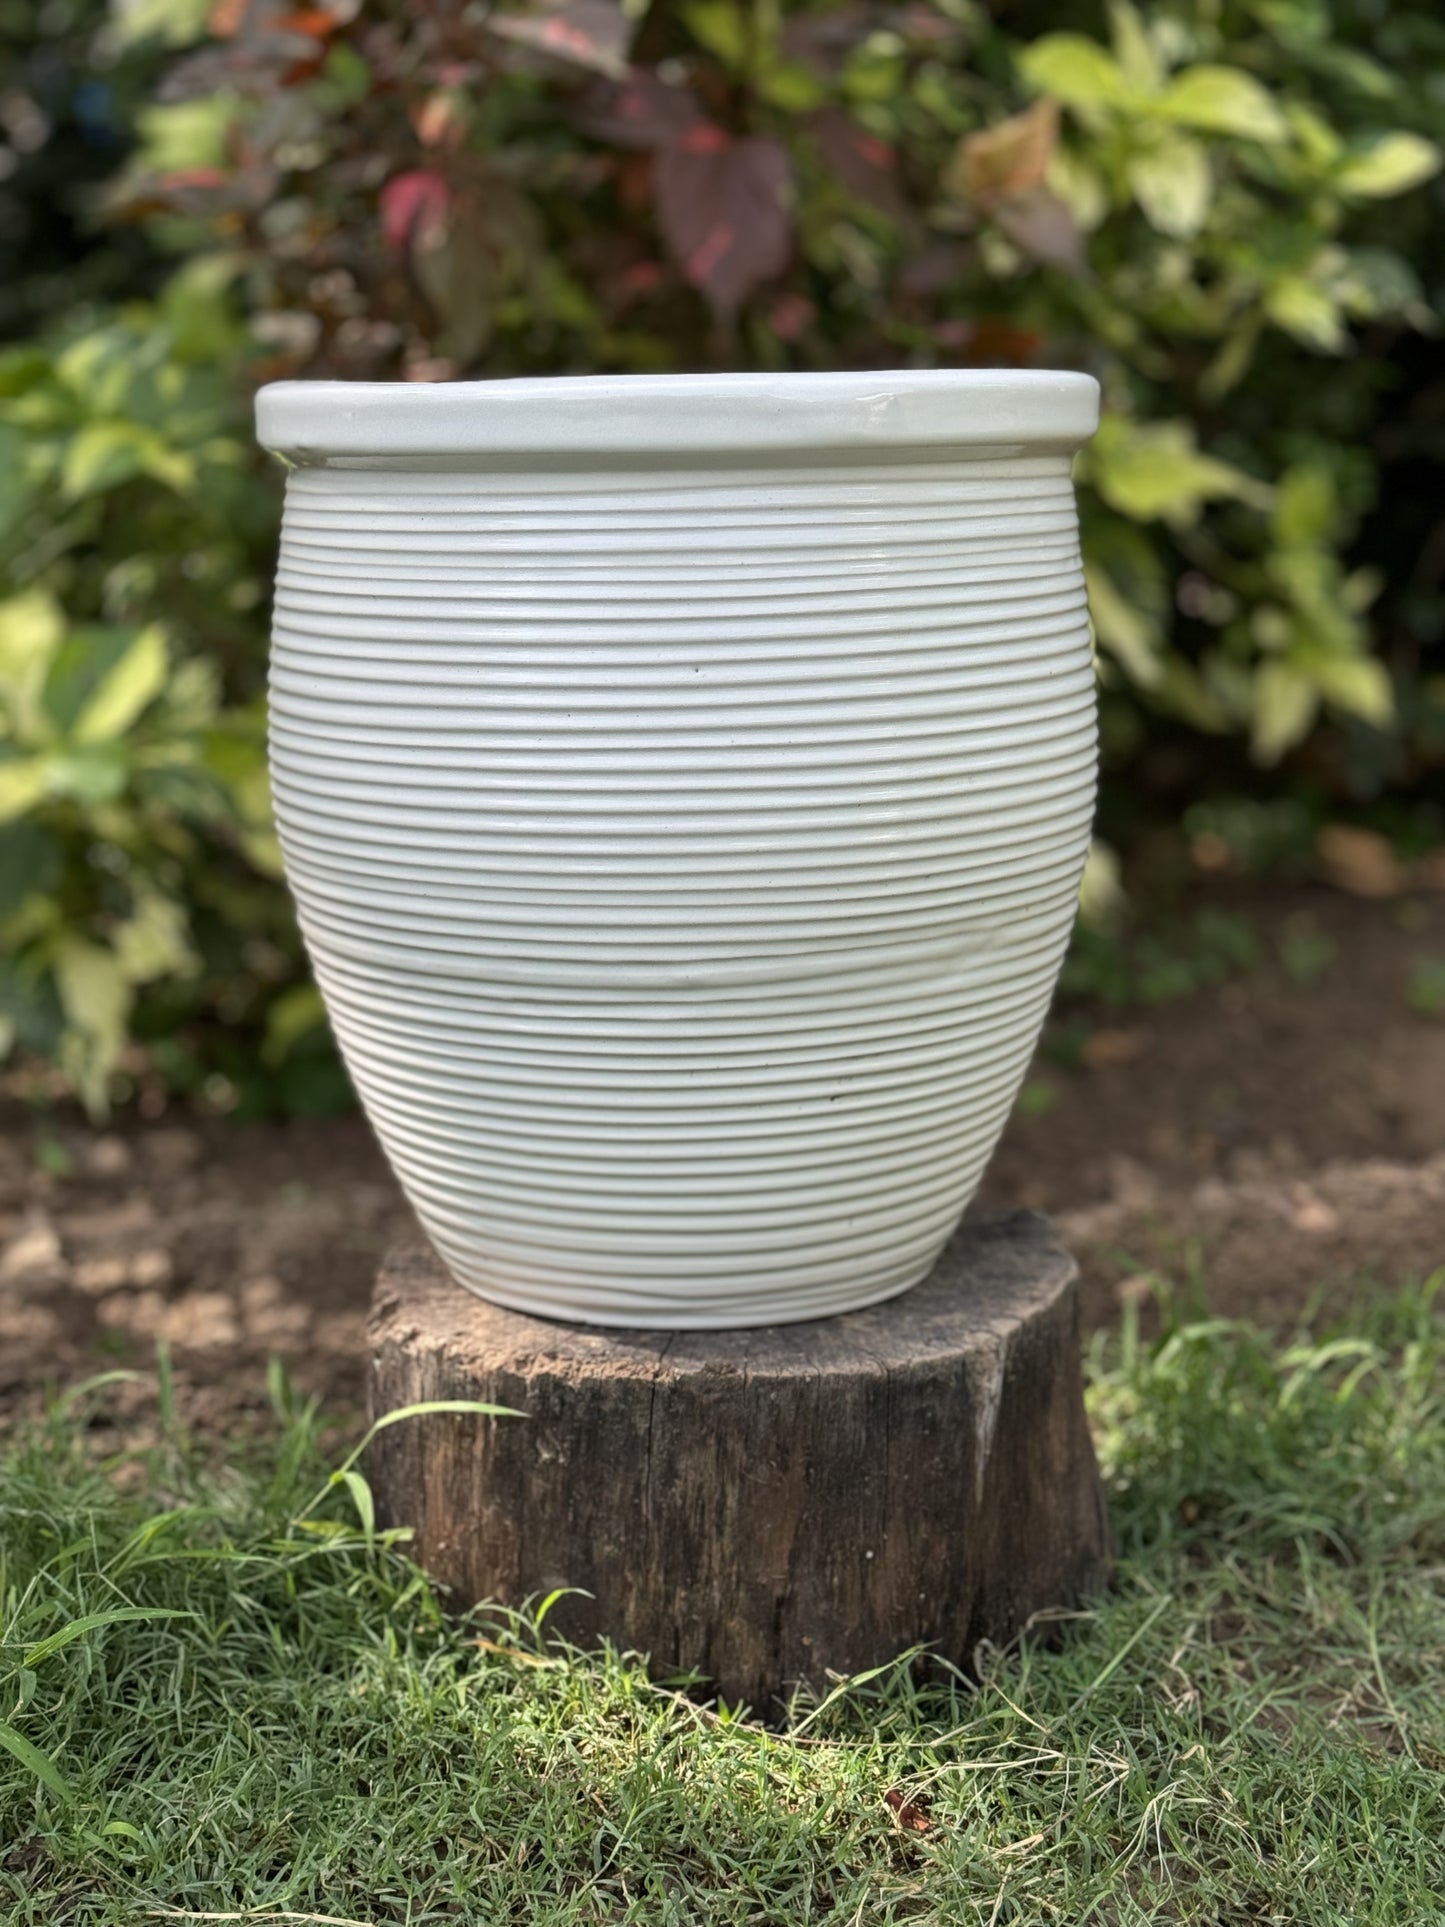 Ceramic Ribbed Gleam Planter Pot for Home Garden Balcony Decor